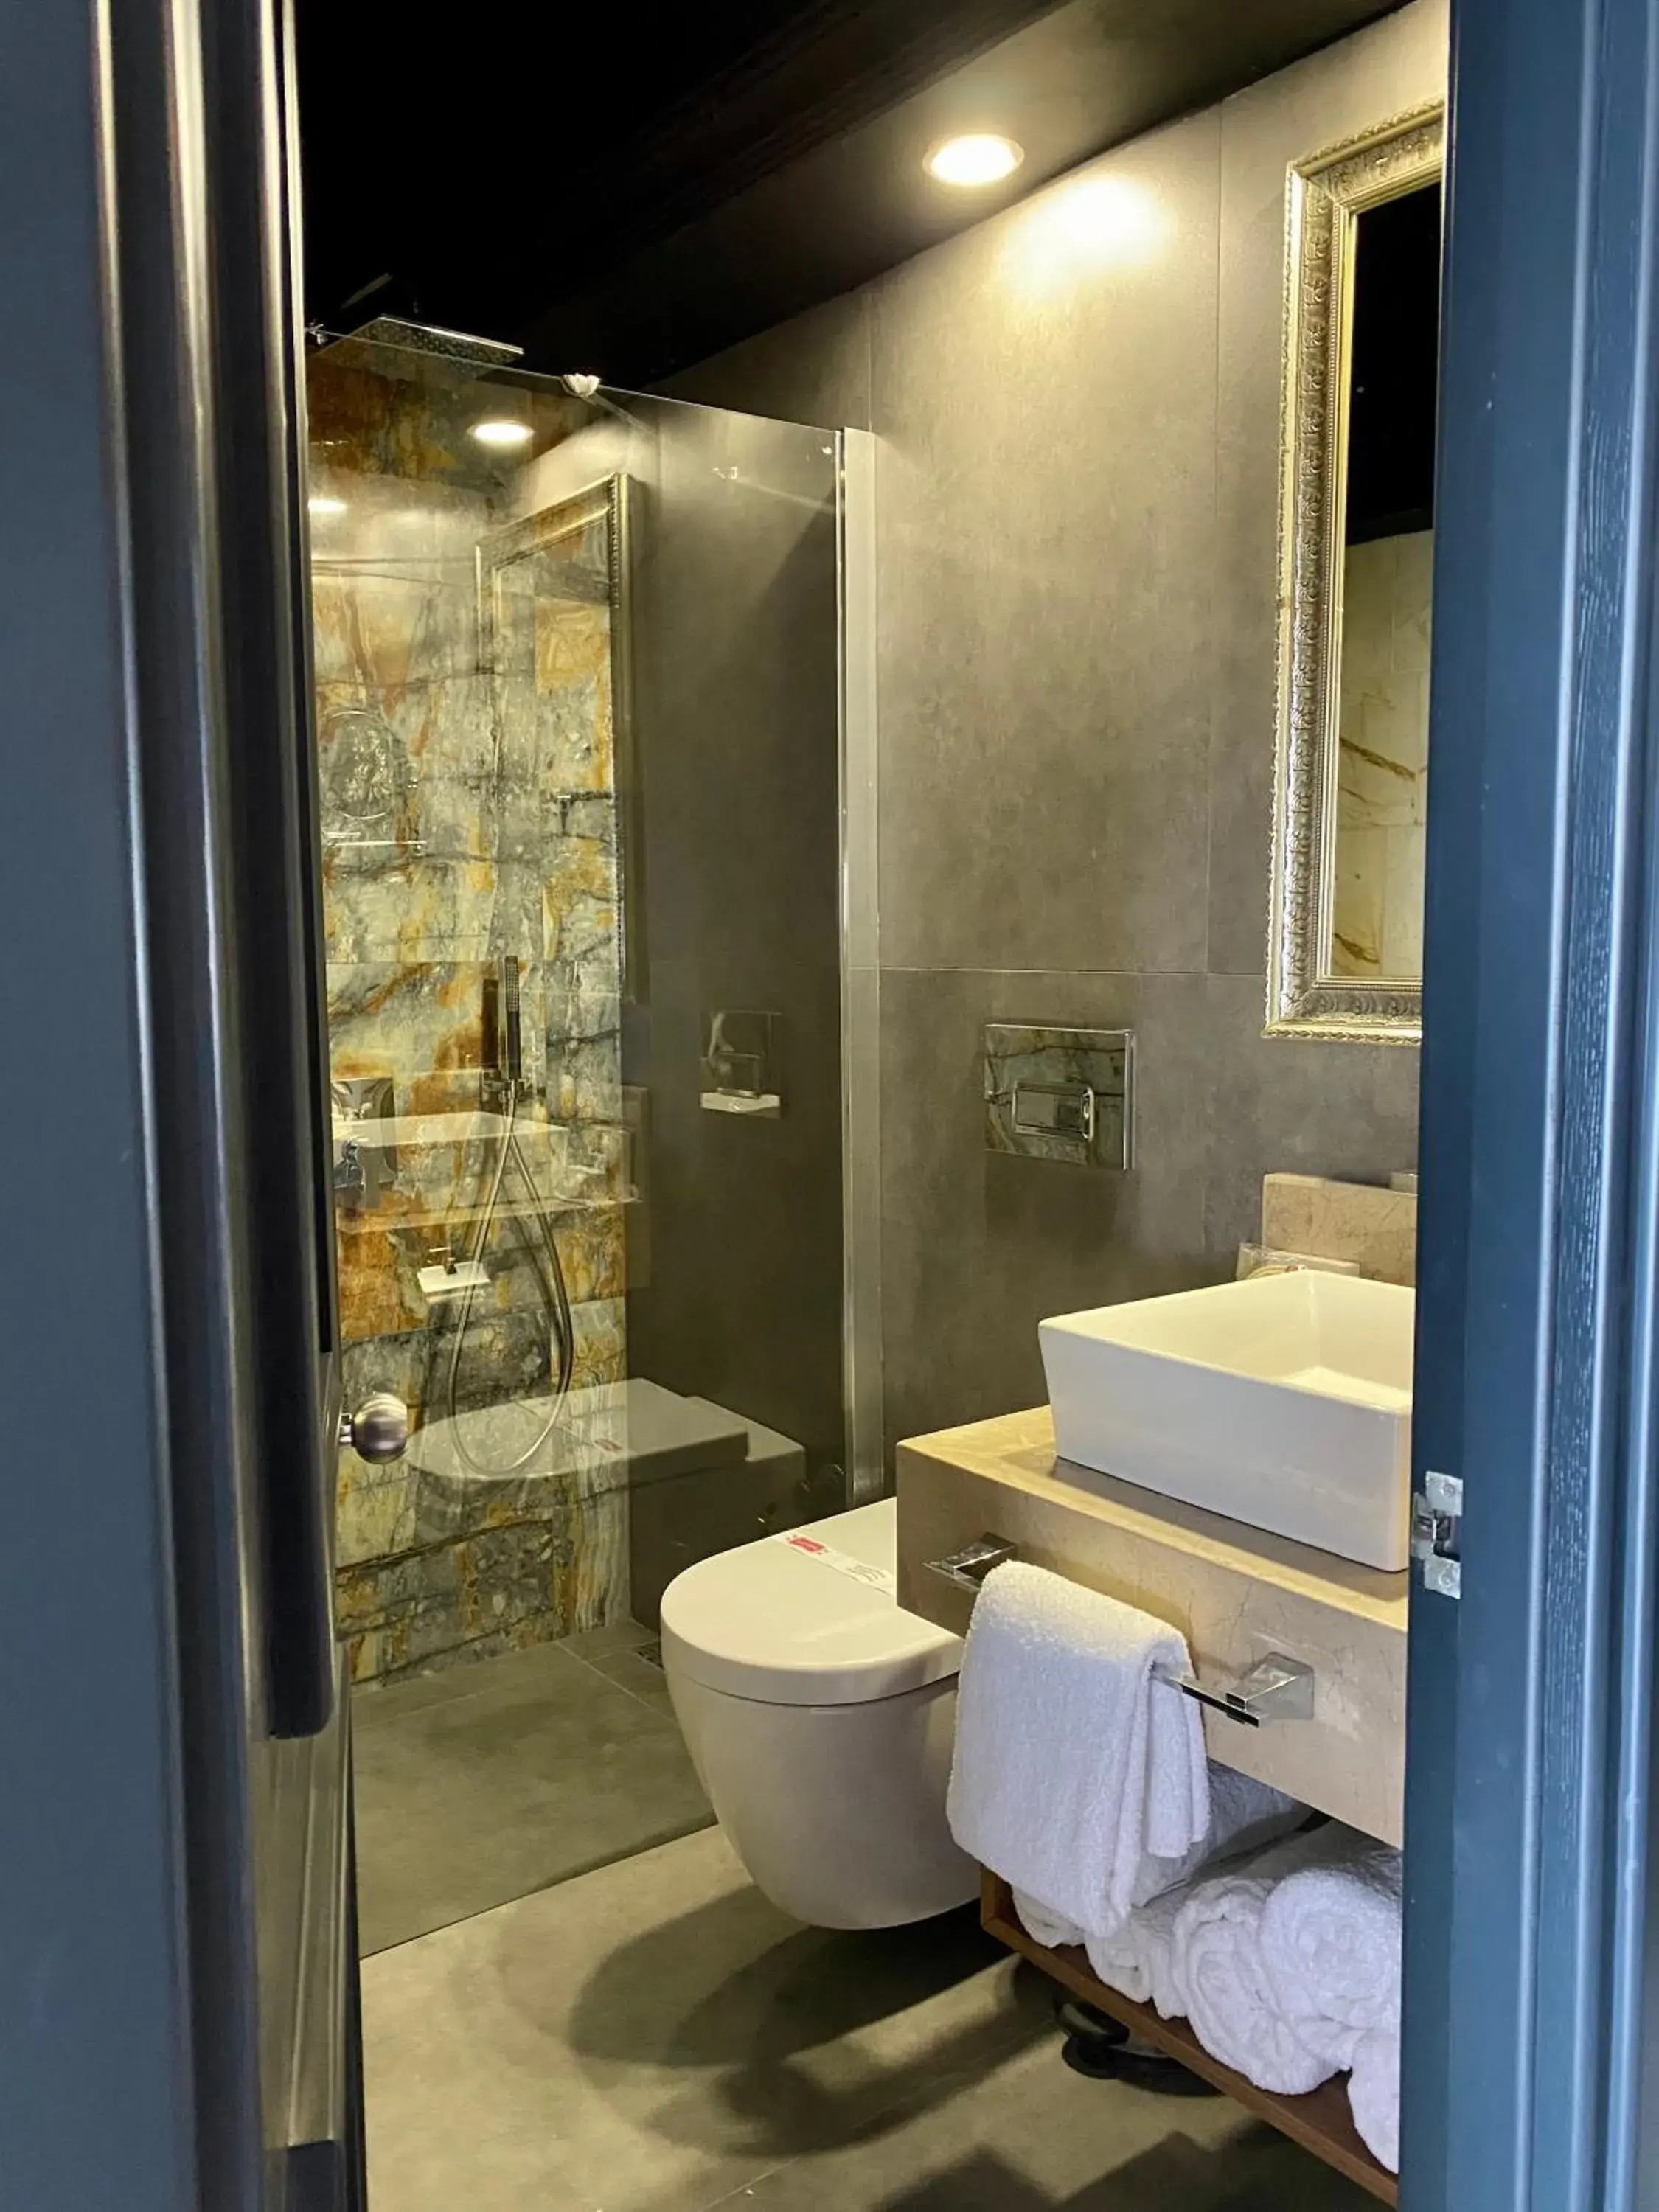 Toilet, Bathroom in LAUR HOTELS Experience & Elegance